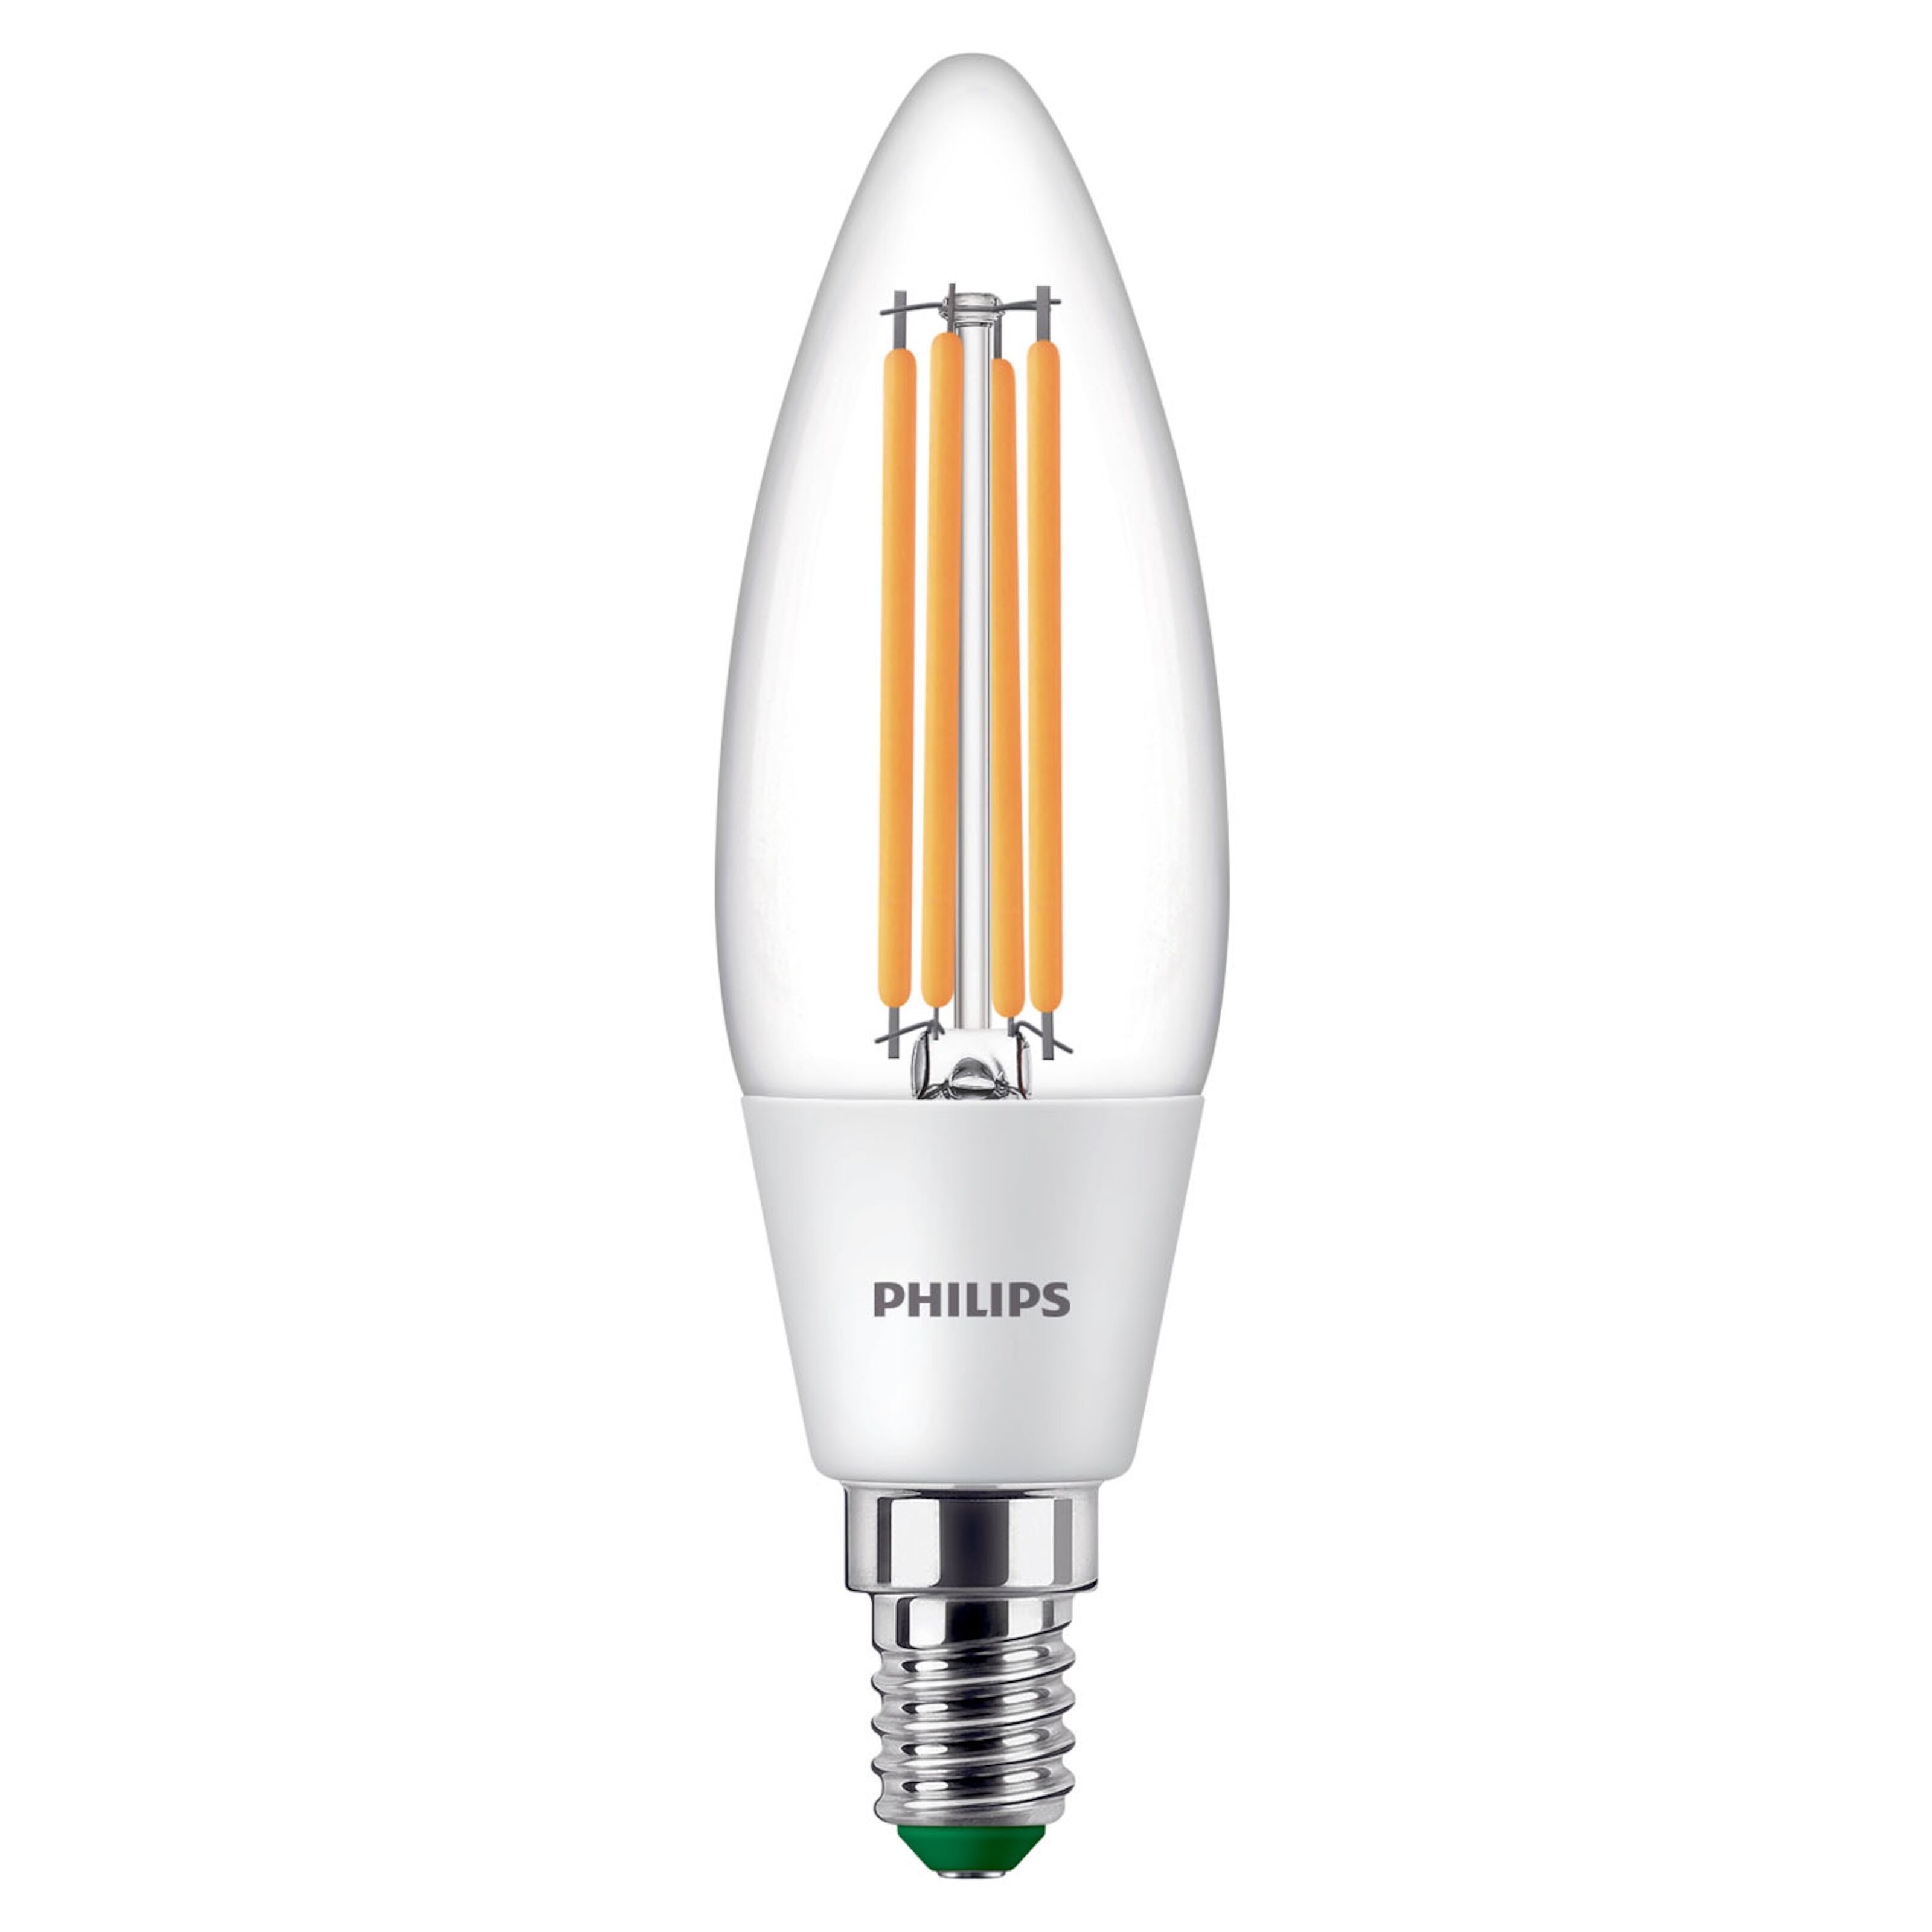 Yphix Ampoule LED E14 Atlas G45 2700 K dimmable